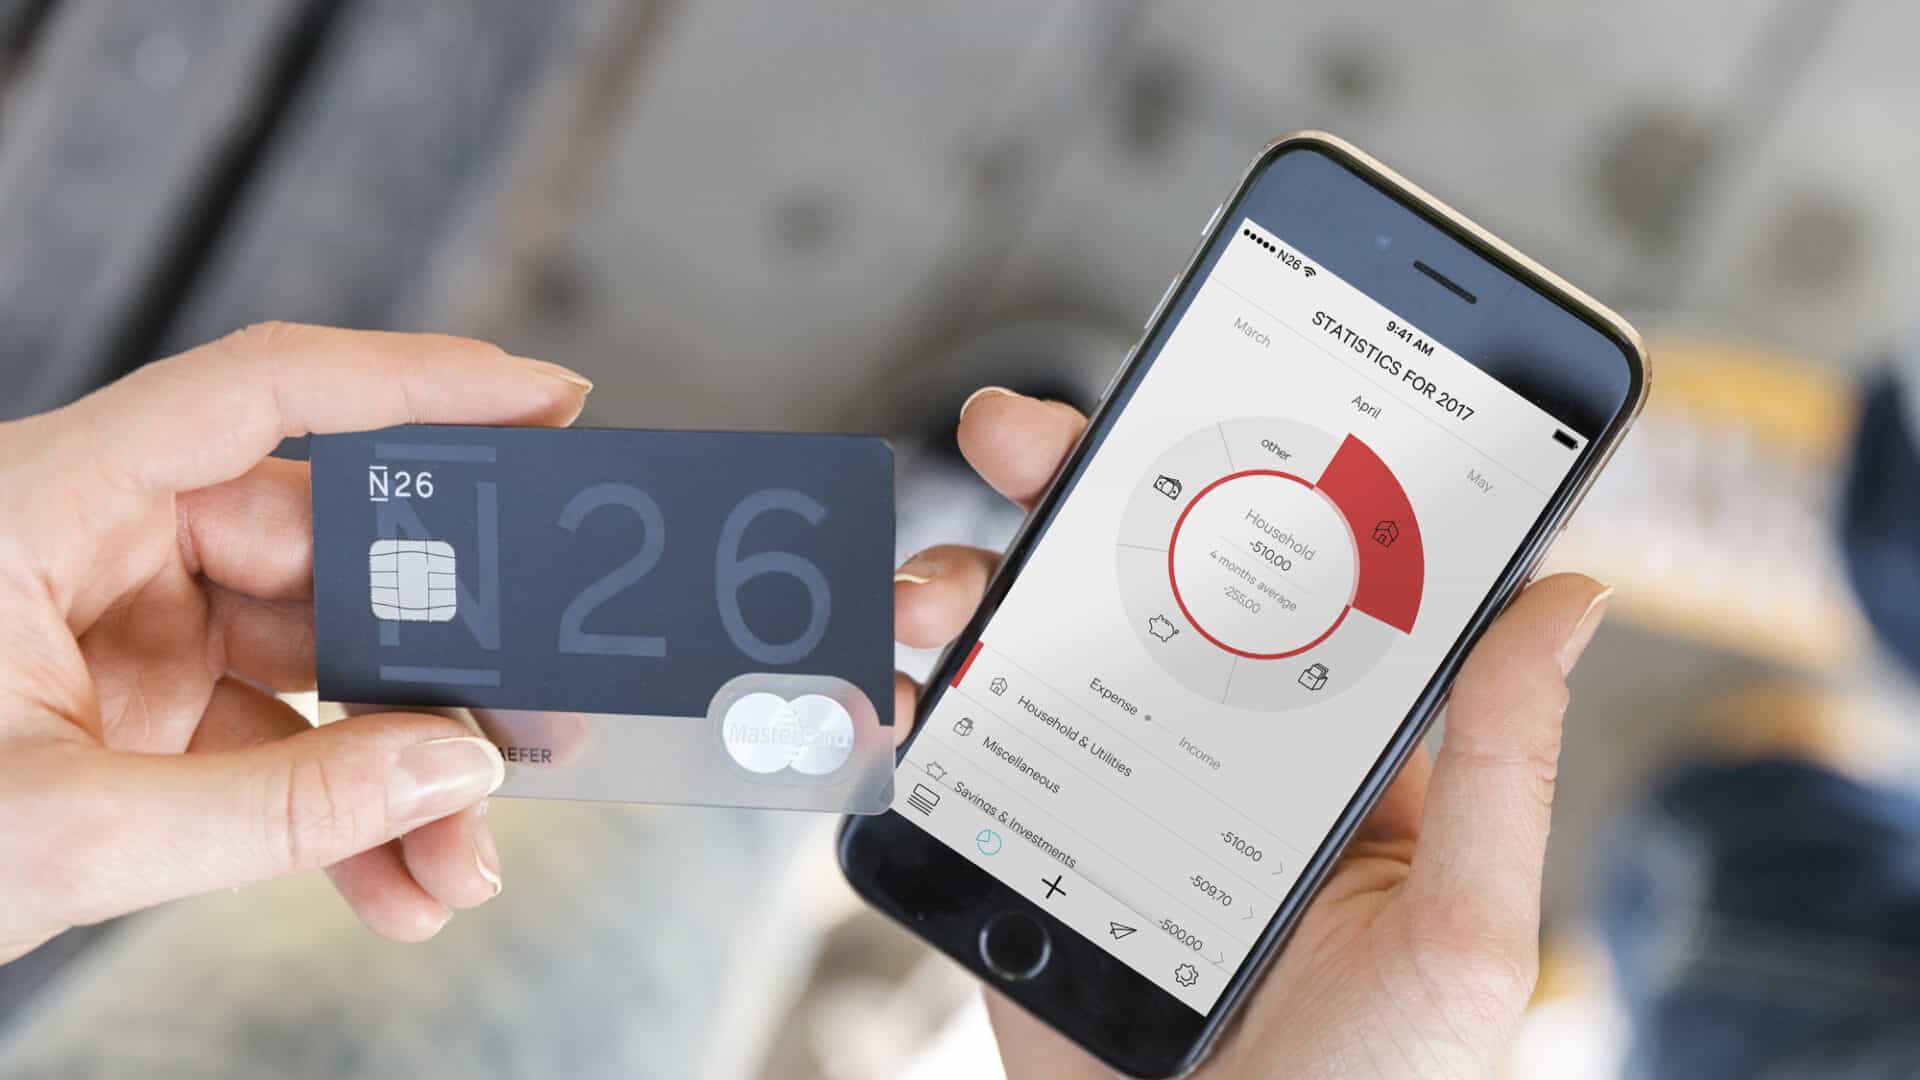 N26 ist eine Digitalbank, die sich über das Smartphone verwalten lässt